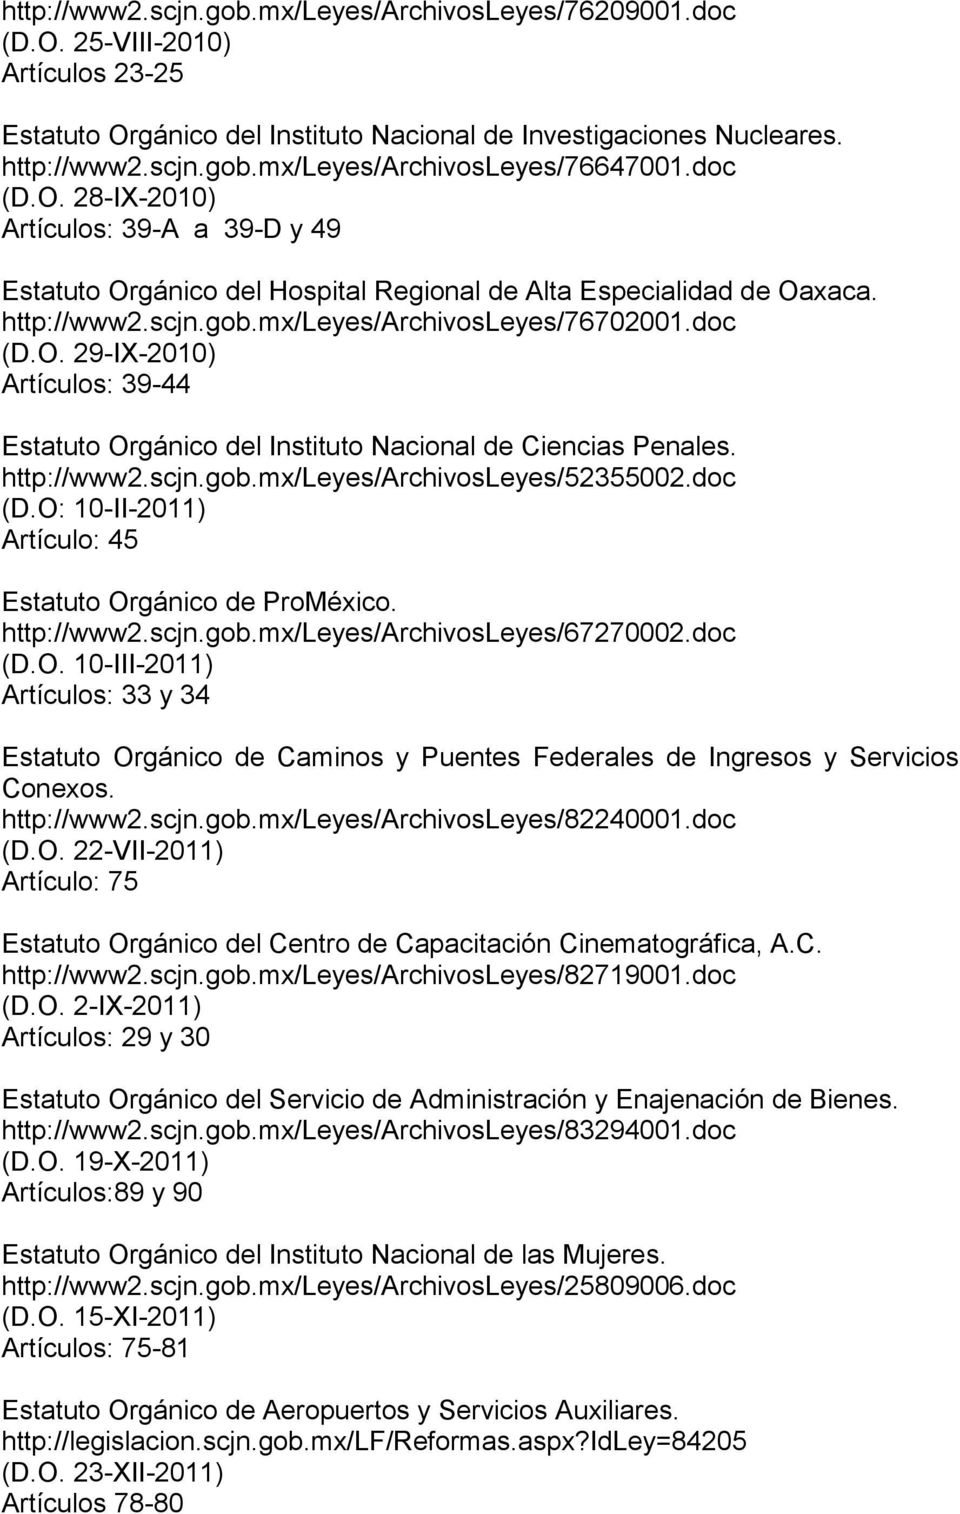 http://www2.scjn.gob.mx/leyes/archivosleyes/52355002.doc (D.O: 10-II-2011) Artículo: 45 Estatuto Orgánico de ProMéxico. http://www2.scjn.gob.mx/leyes/archivosleyes/67270002.doc (D.O. 10-III-2011) Artículos: 33 y 34 Estatuto Orgánico de Caminos y Puentes Federales de Ingresos y Servicios Conexos.